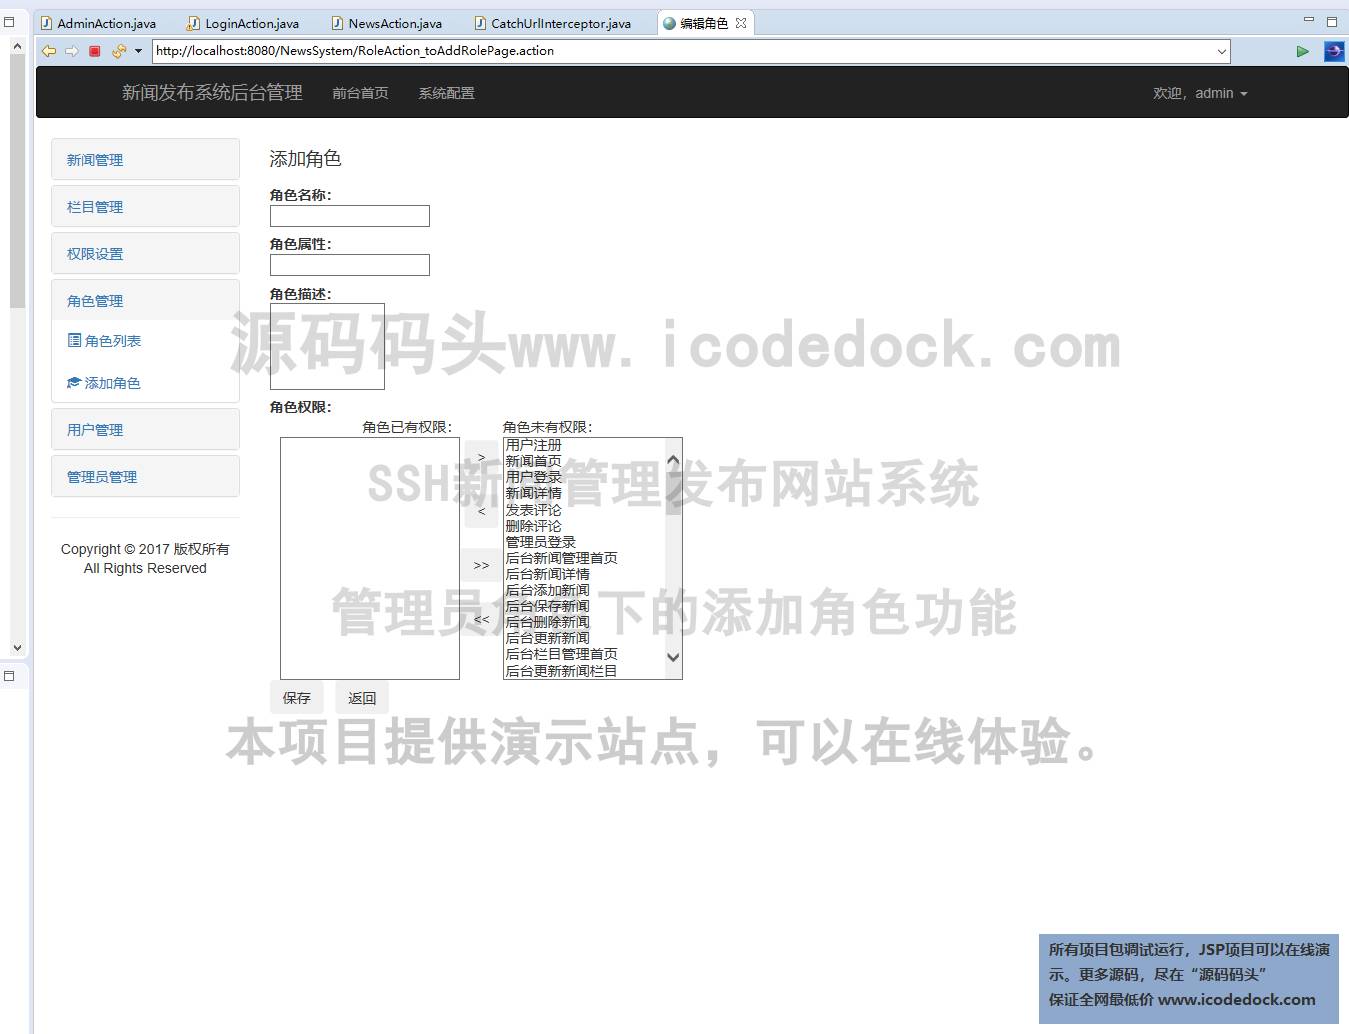 源码码头-SSH新闻管理发布网站系统-管理员角色-添加角色